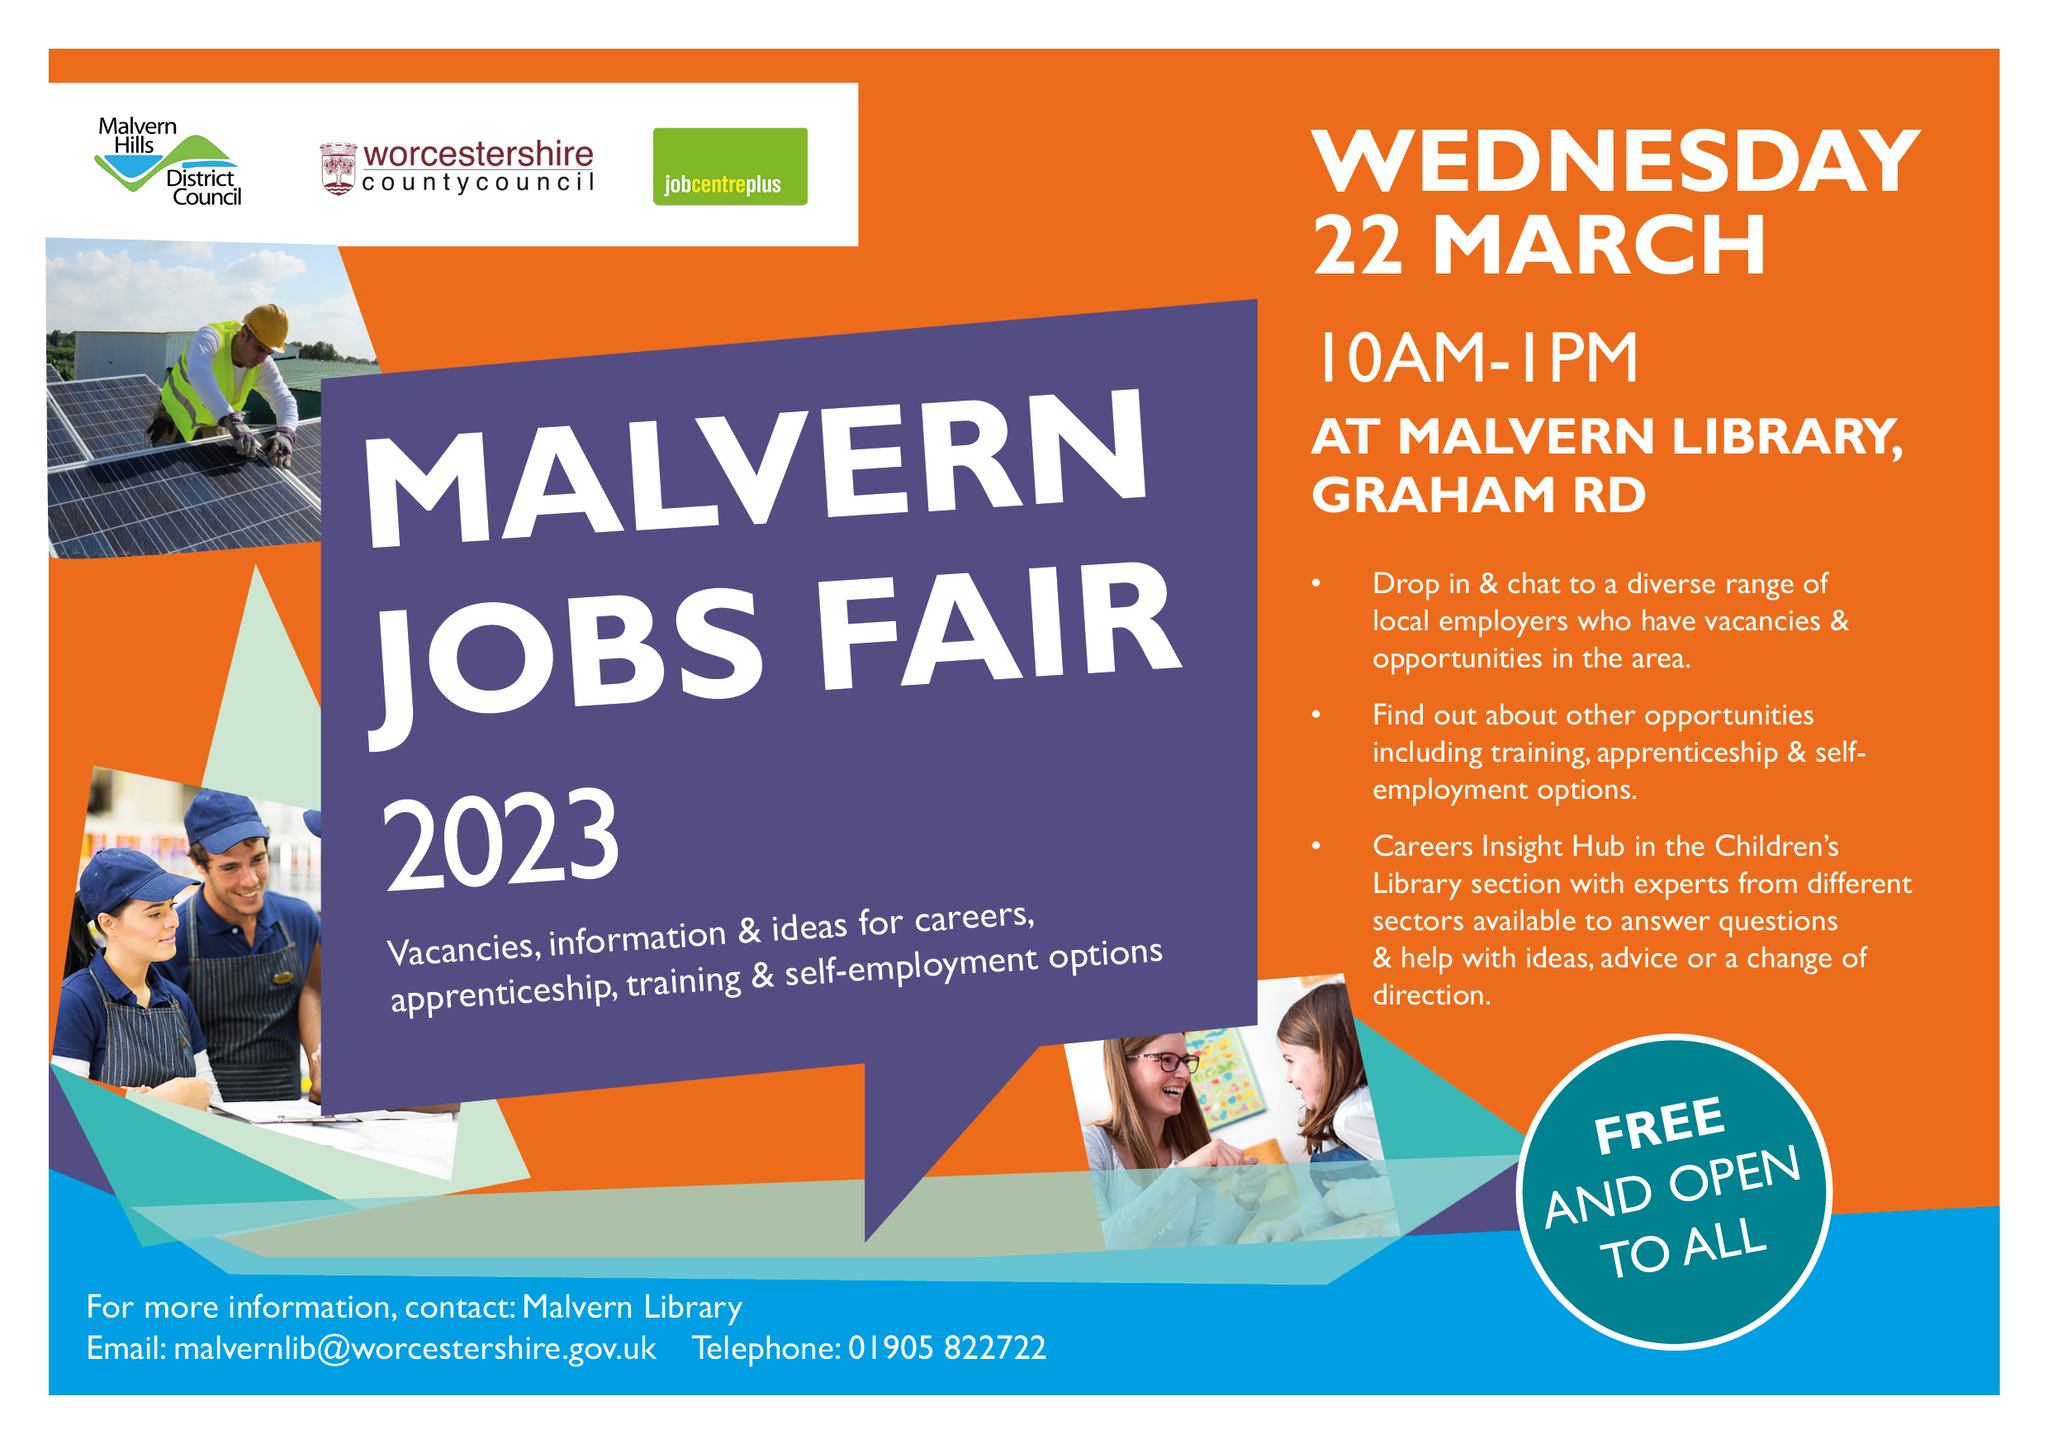 Malvern Library Jobs Fair March 2023